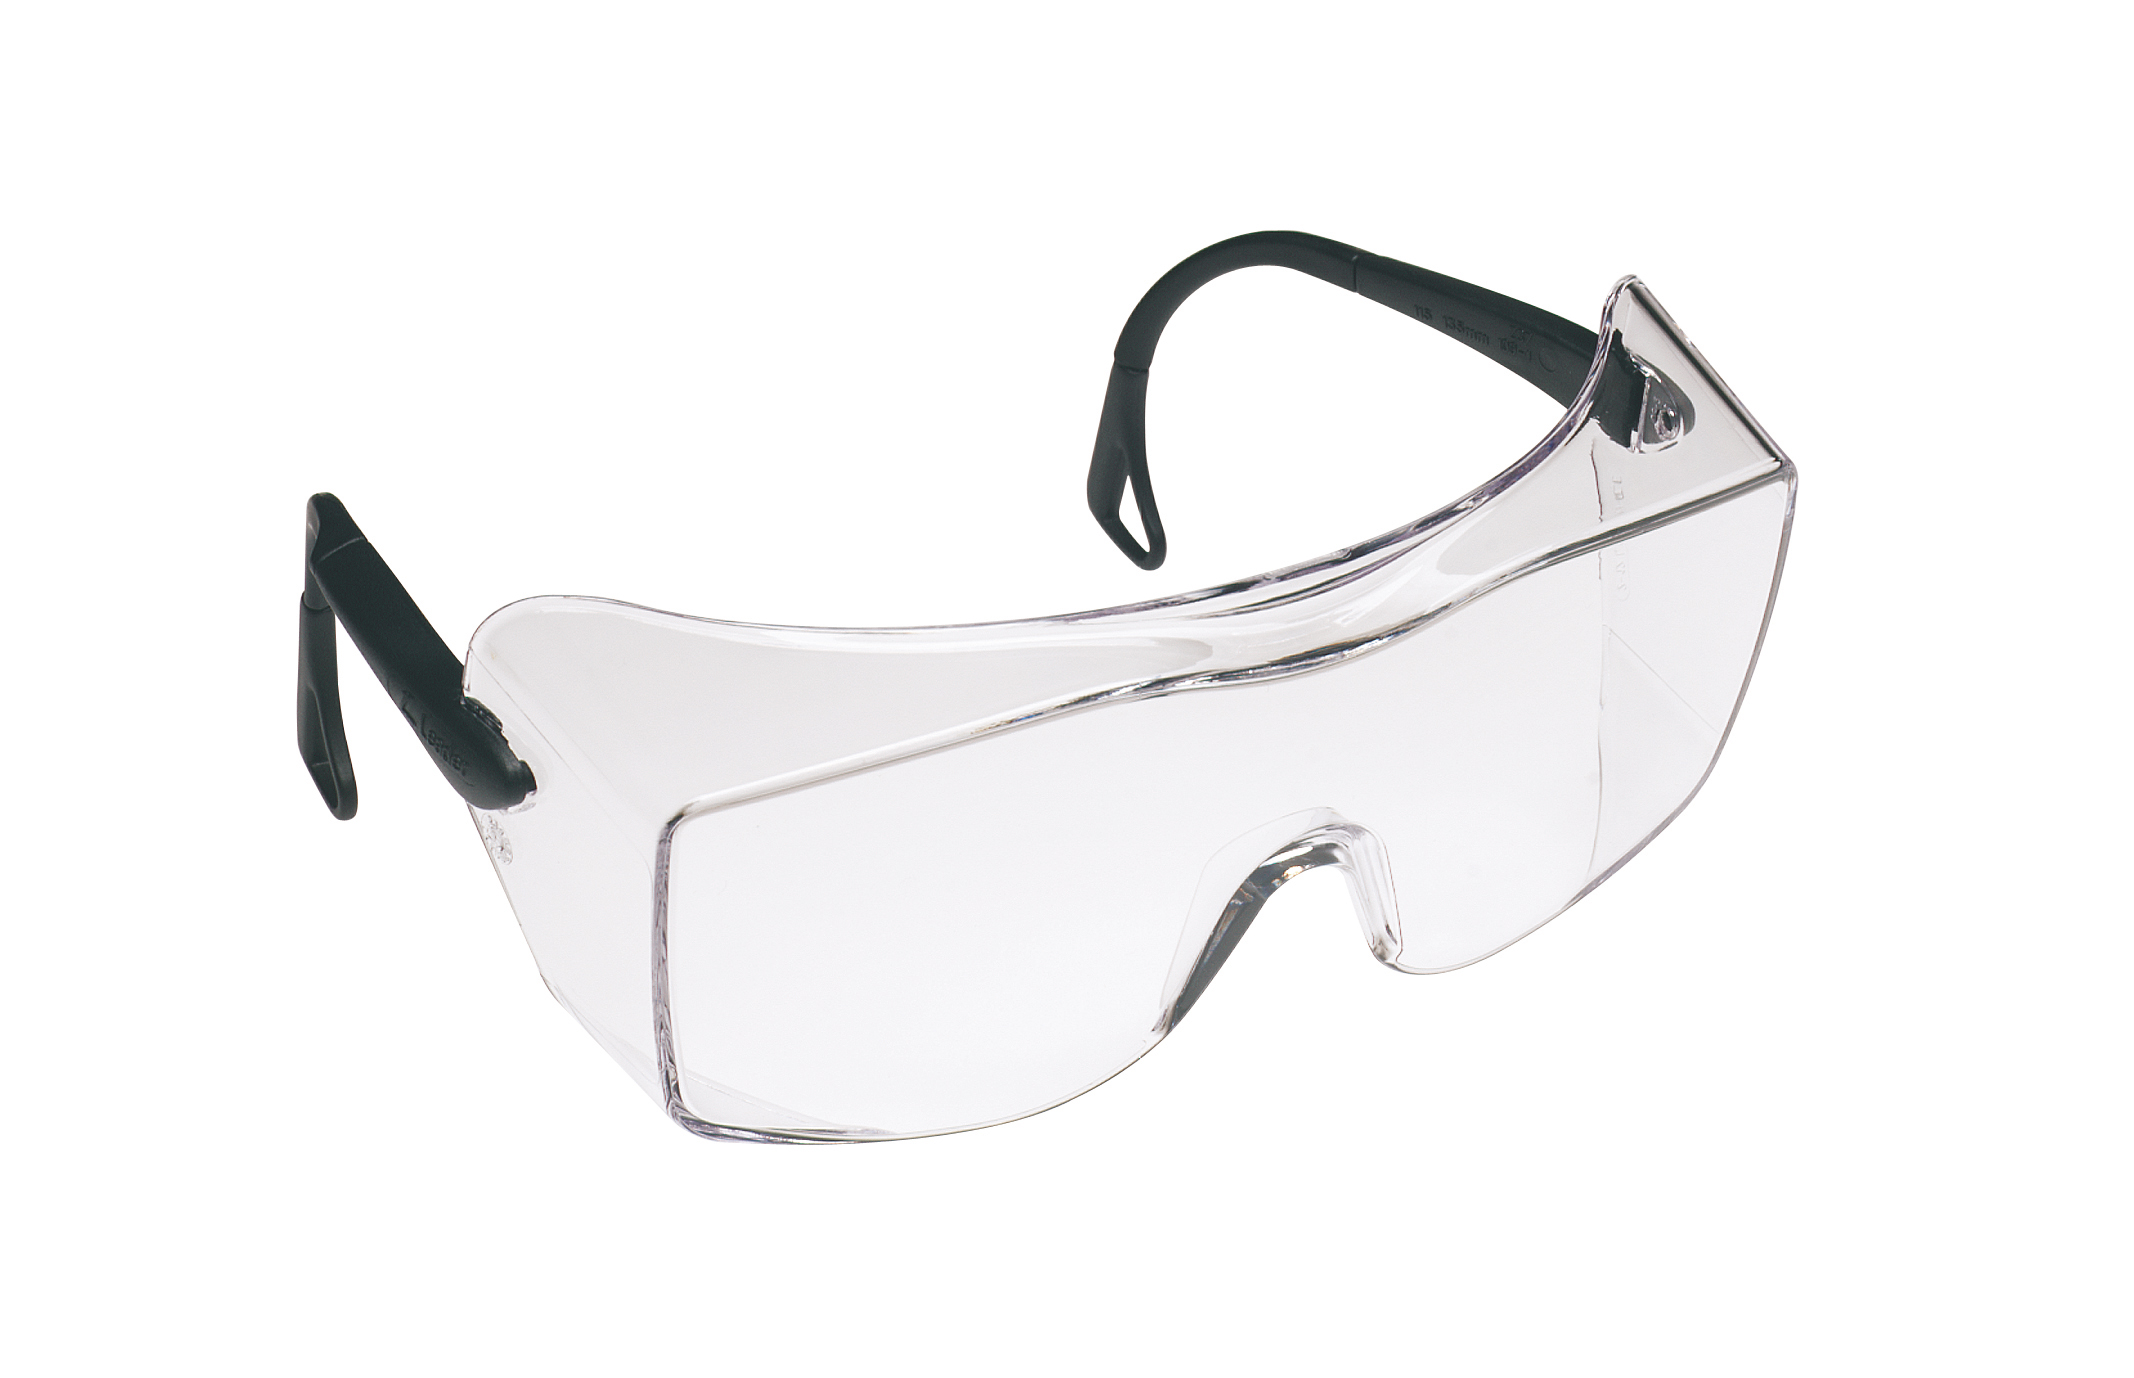 3M 防雾防刮擦经济型防护眼镜(12166)